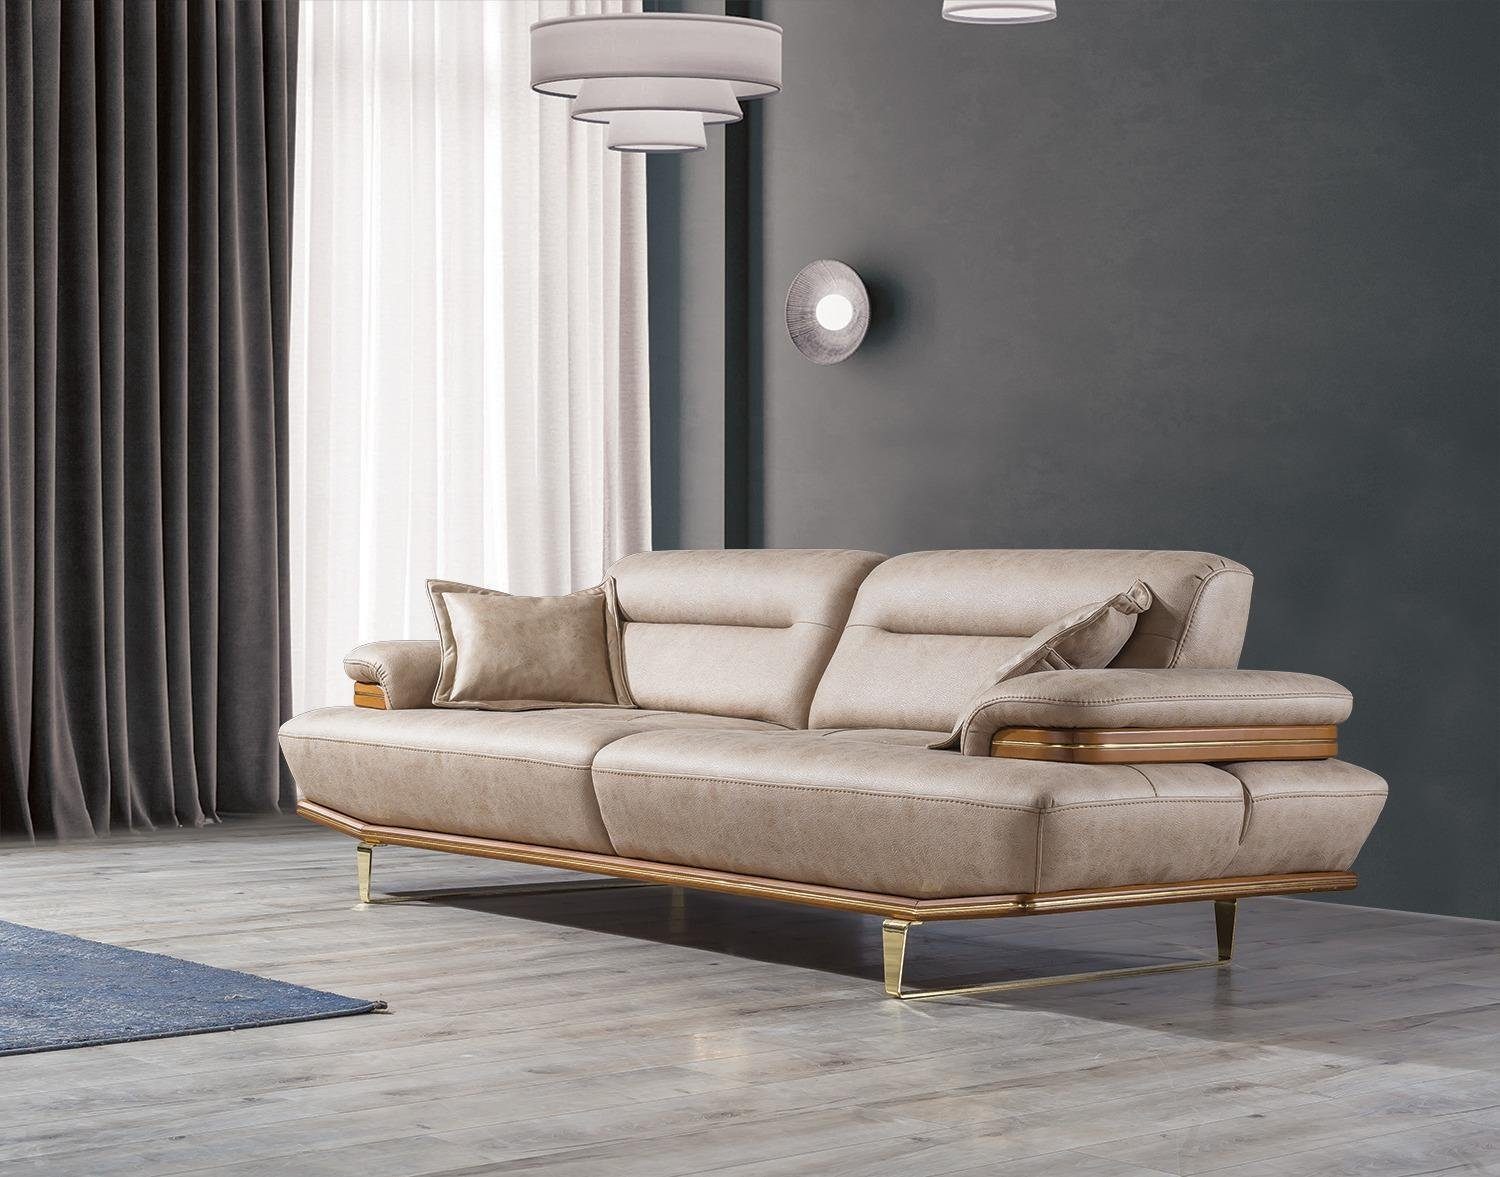 JVmoebel Sofa Dreisitzer Couch Polster Design Sofa Moderne Beige Luxus Möbel Neu, 1 Teile, Made in Europa | Alle Sofas